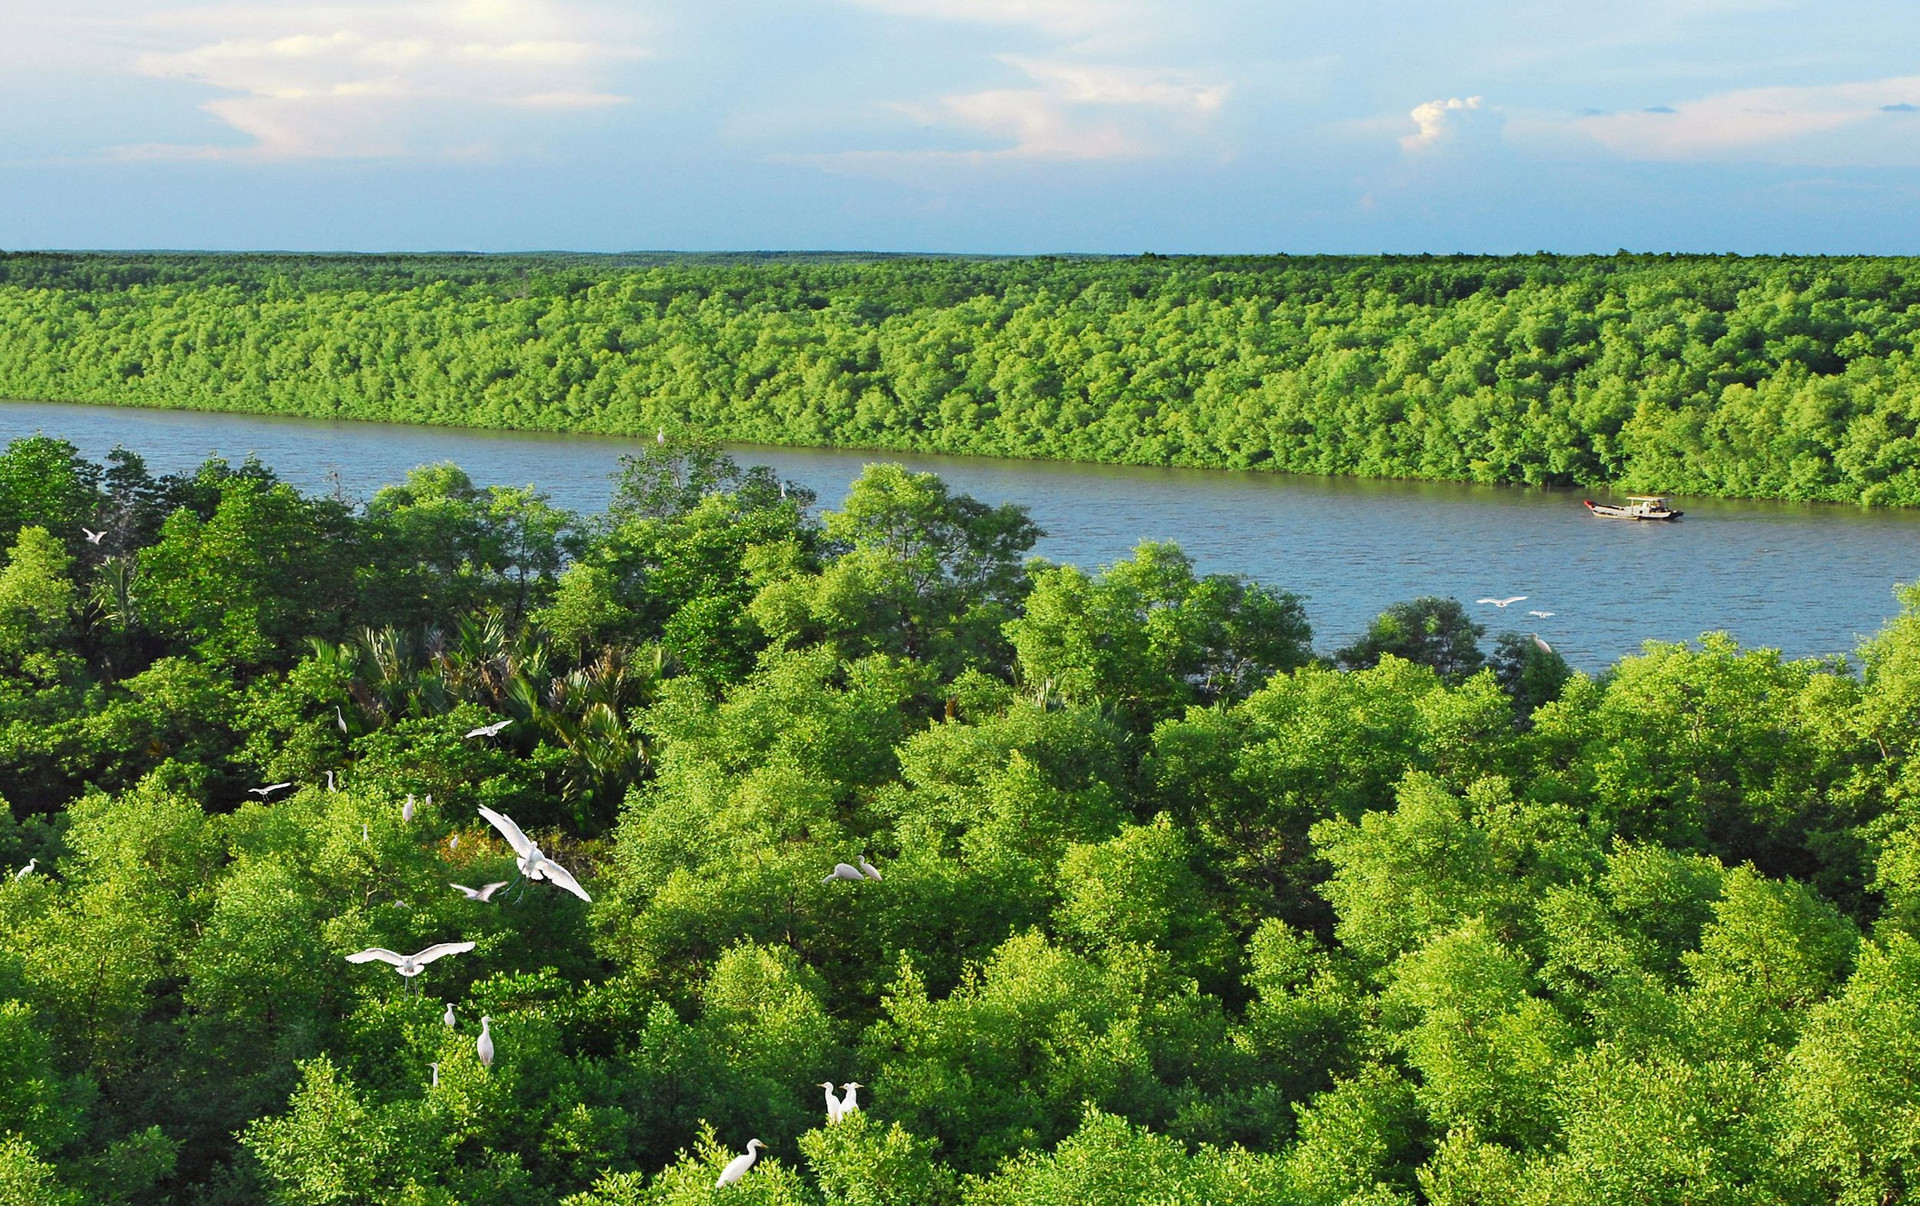 Khu rừng cách trung tâm TP HCM 40km, trên chim trời, dưới cây xanh, nước 3 dòng sông nổi tiếng dồn về - Ảnh 7.